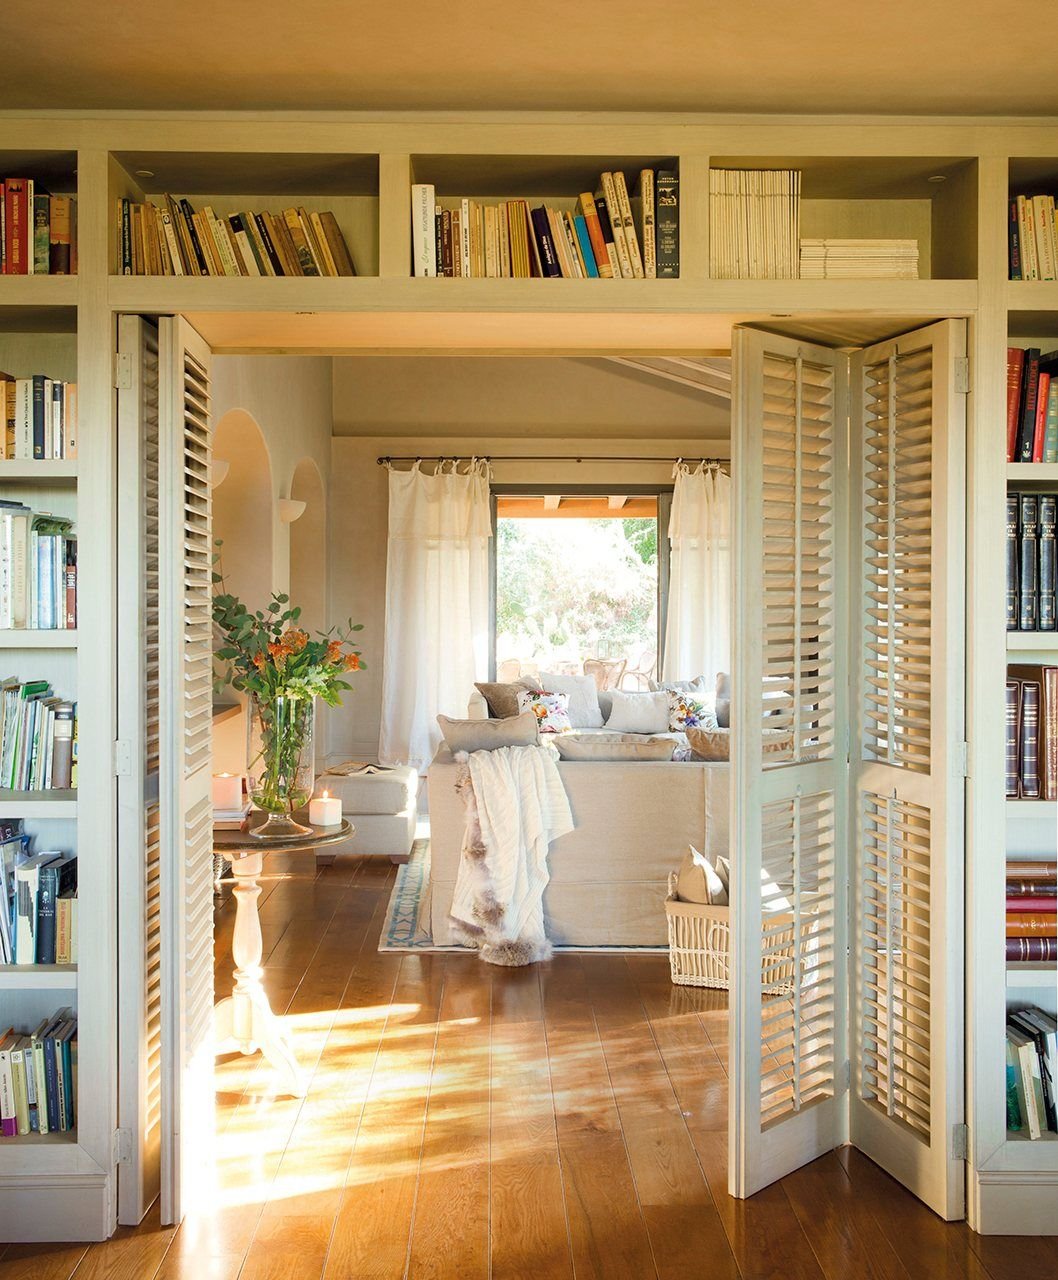 Книжный шкаф вокруг двери